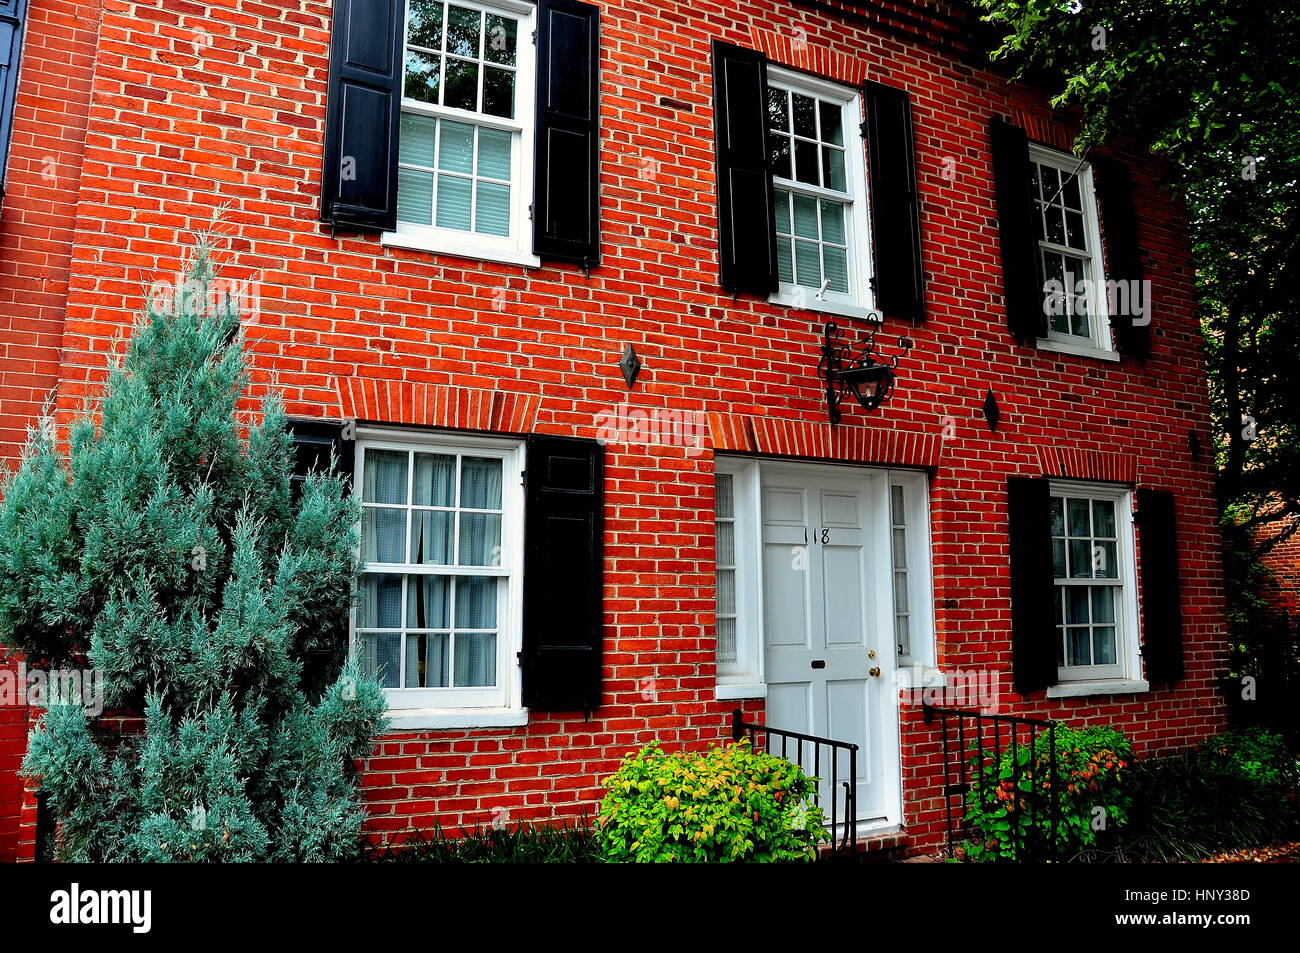 Baltimore, Maryland - Juillet 24, 2013 : 18e siècle en brique fédéral accueil sur Montgomery Street dans le quartier historique de Federal Hill * Banque D'Images